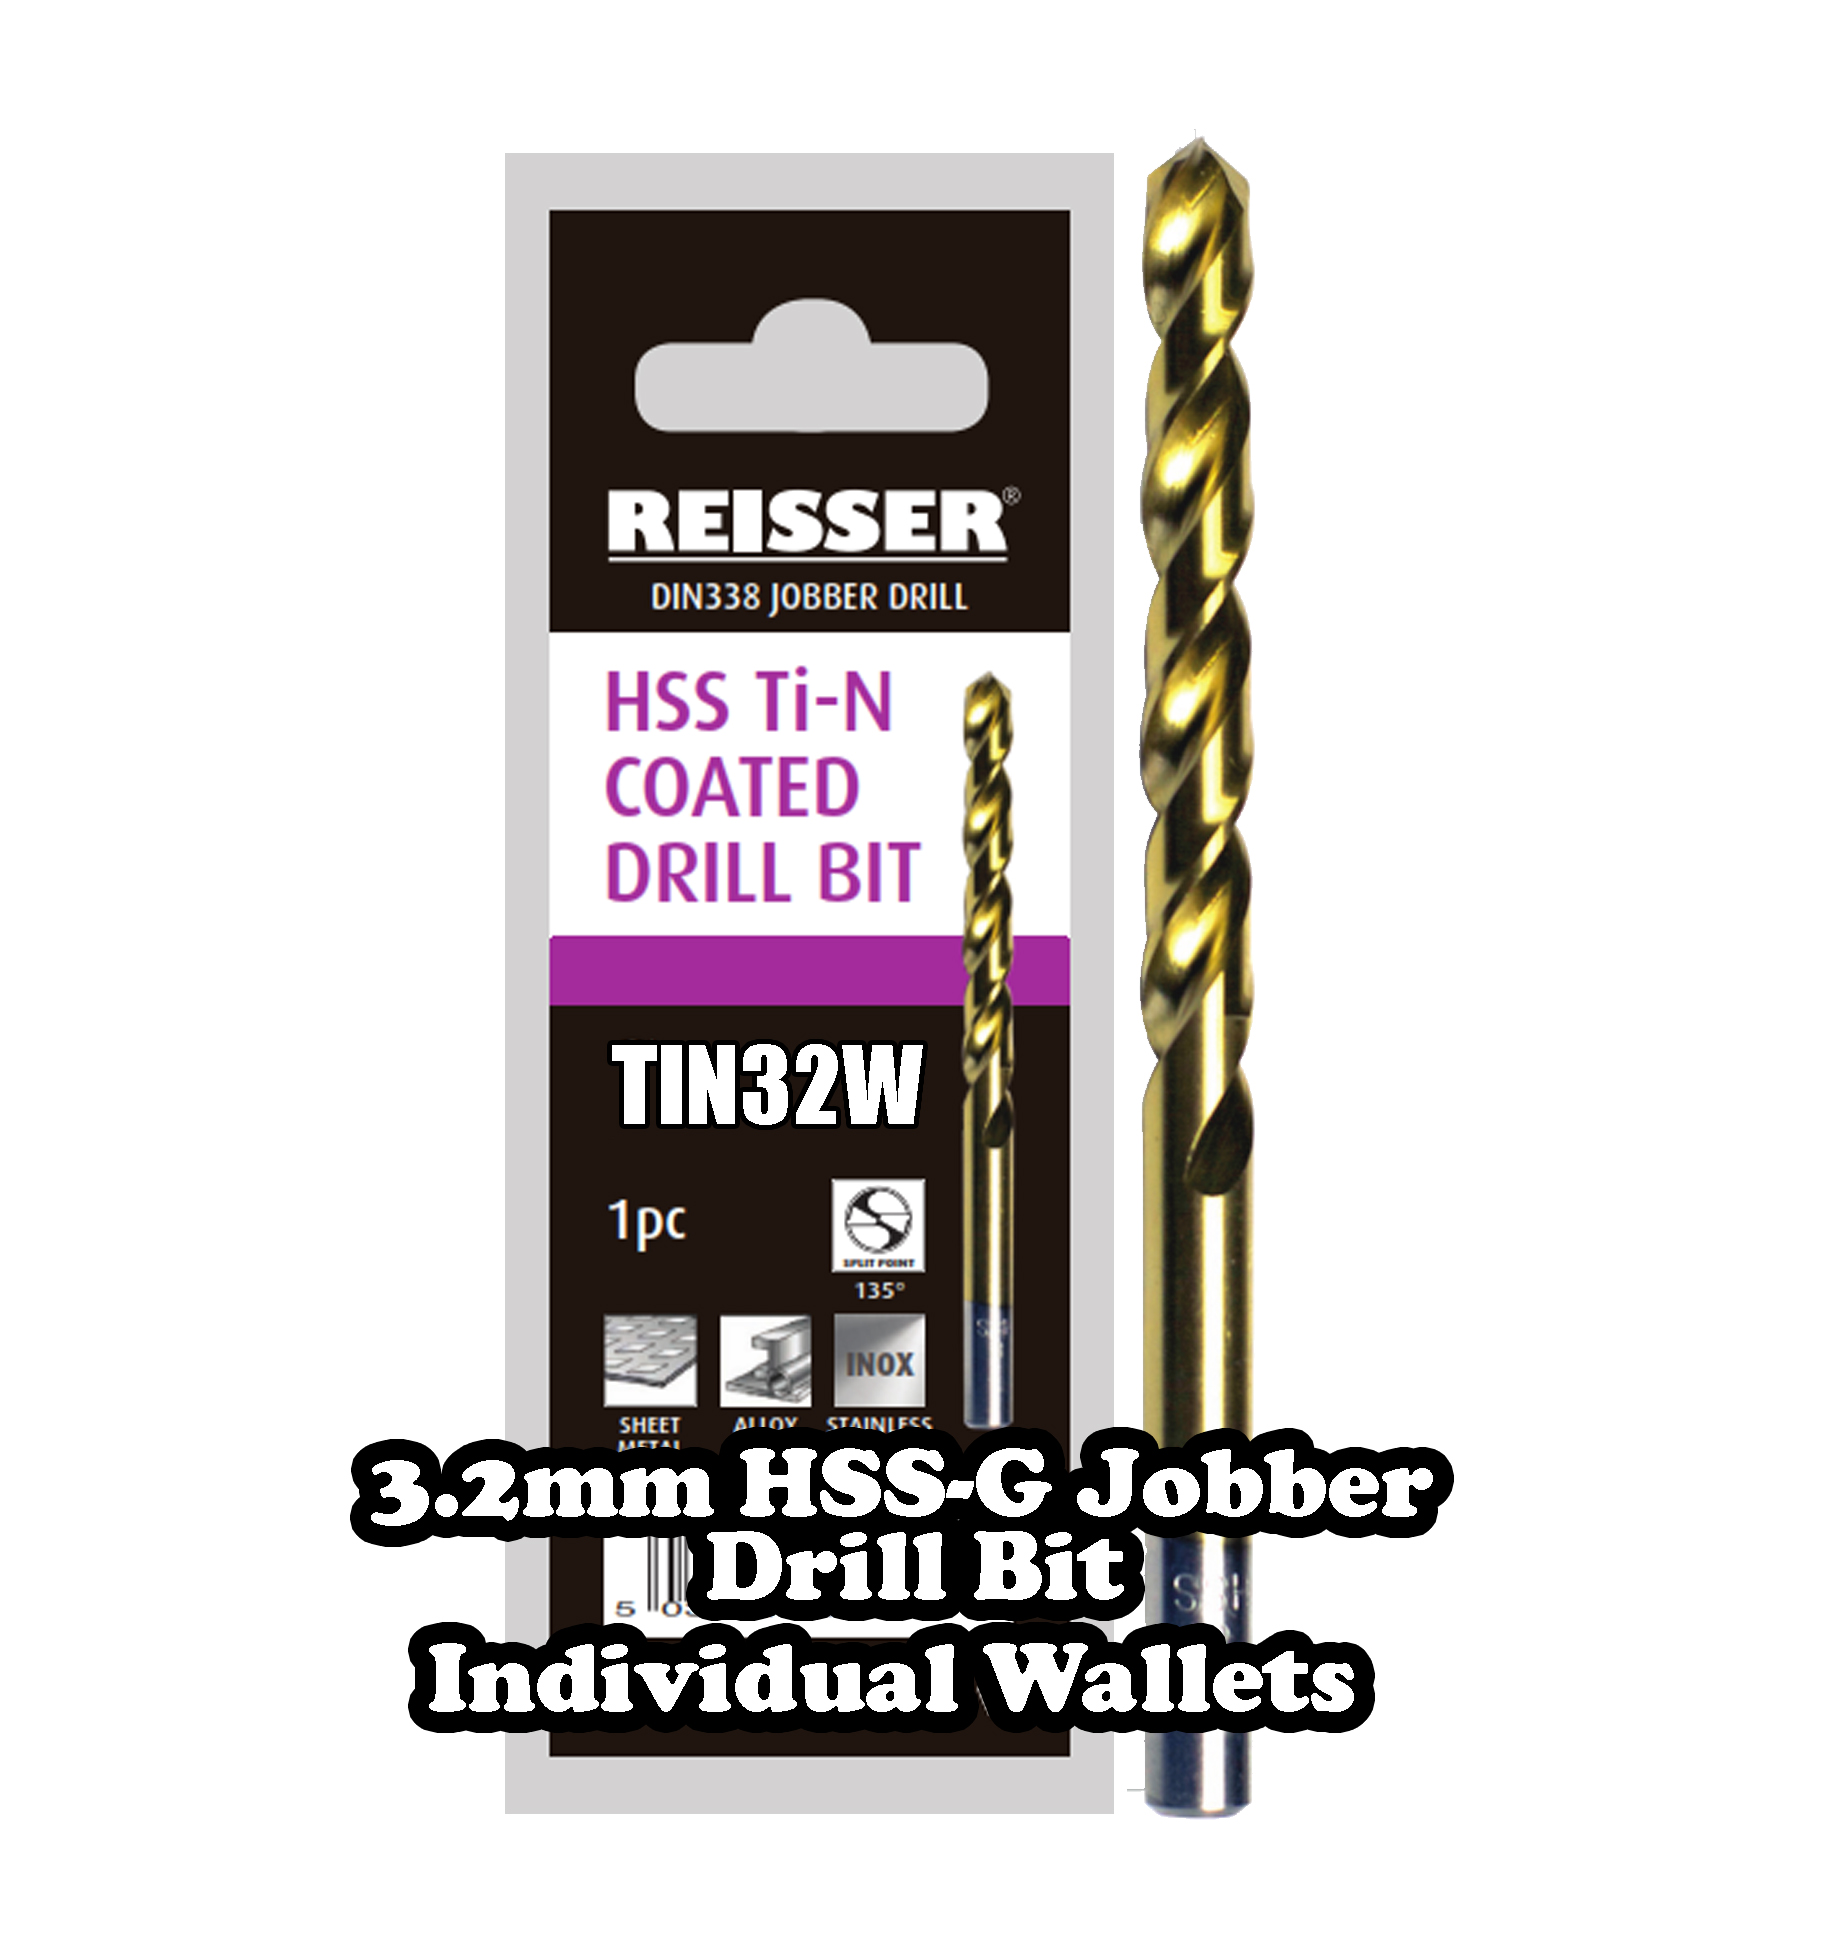 3.2mm HSS Jobber Drill Bit (SINGLE WALLET)